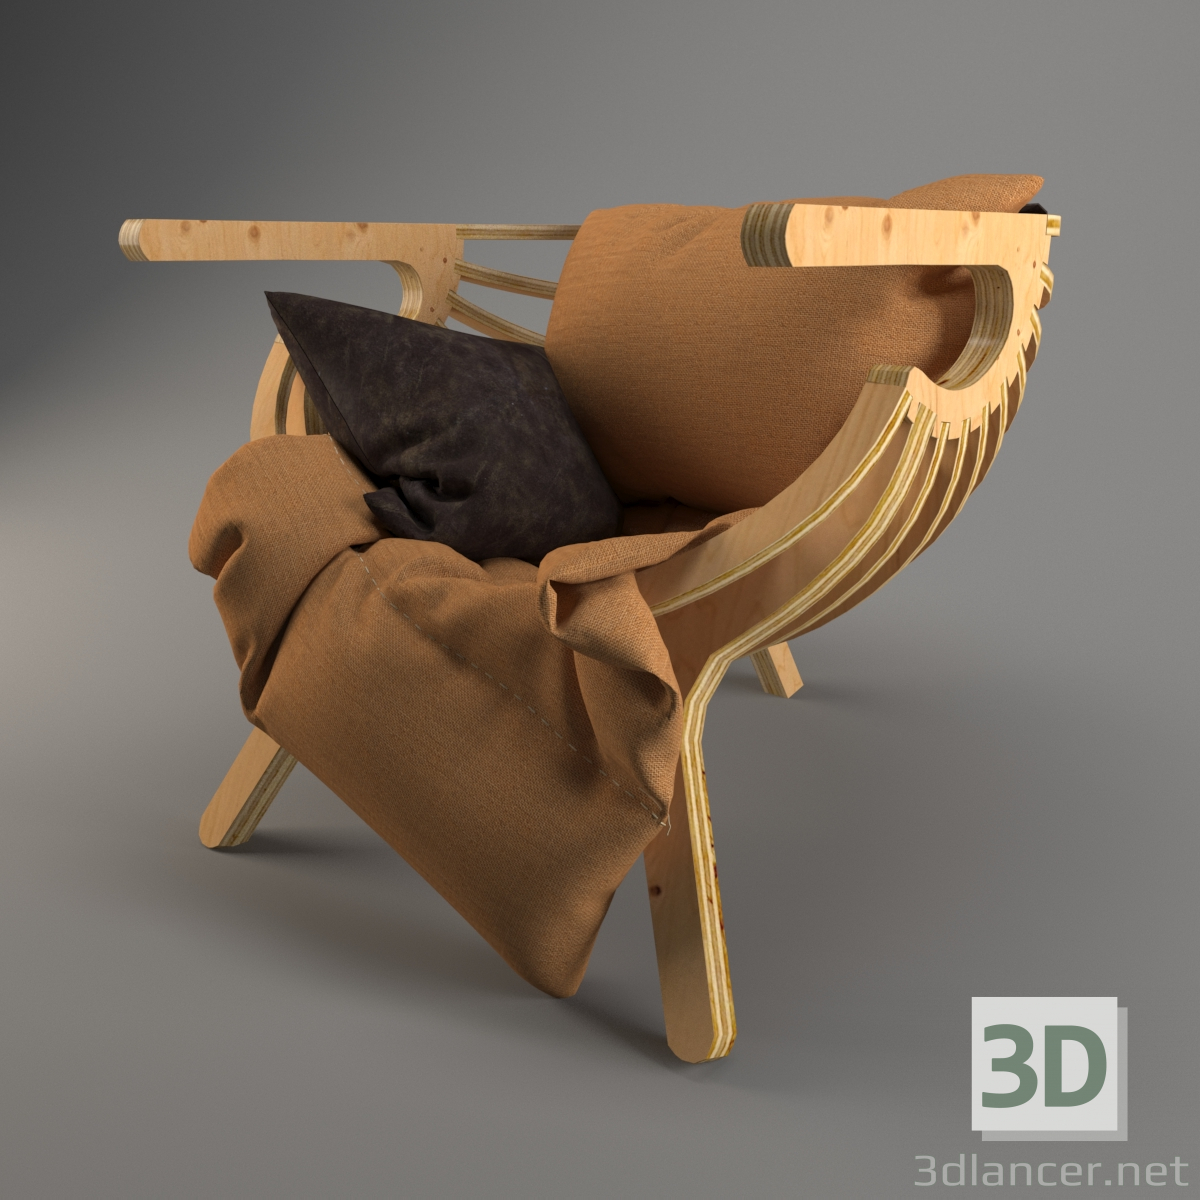 3D Koltuk modeli satın - render